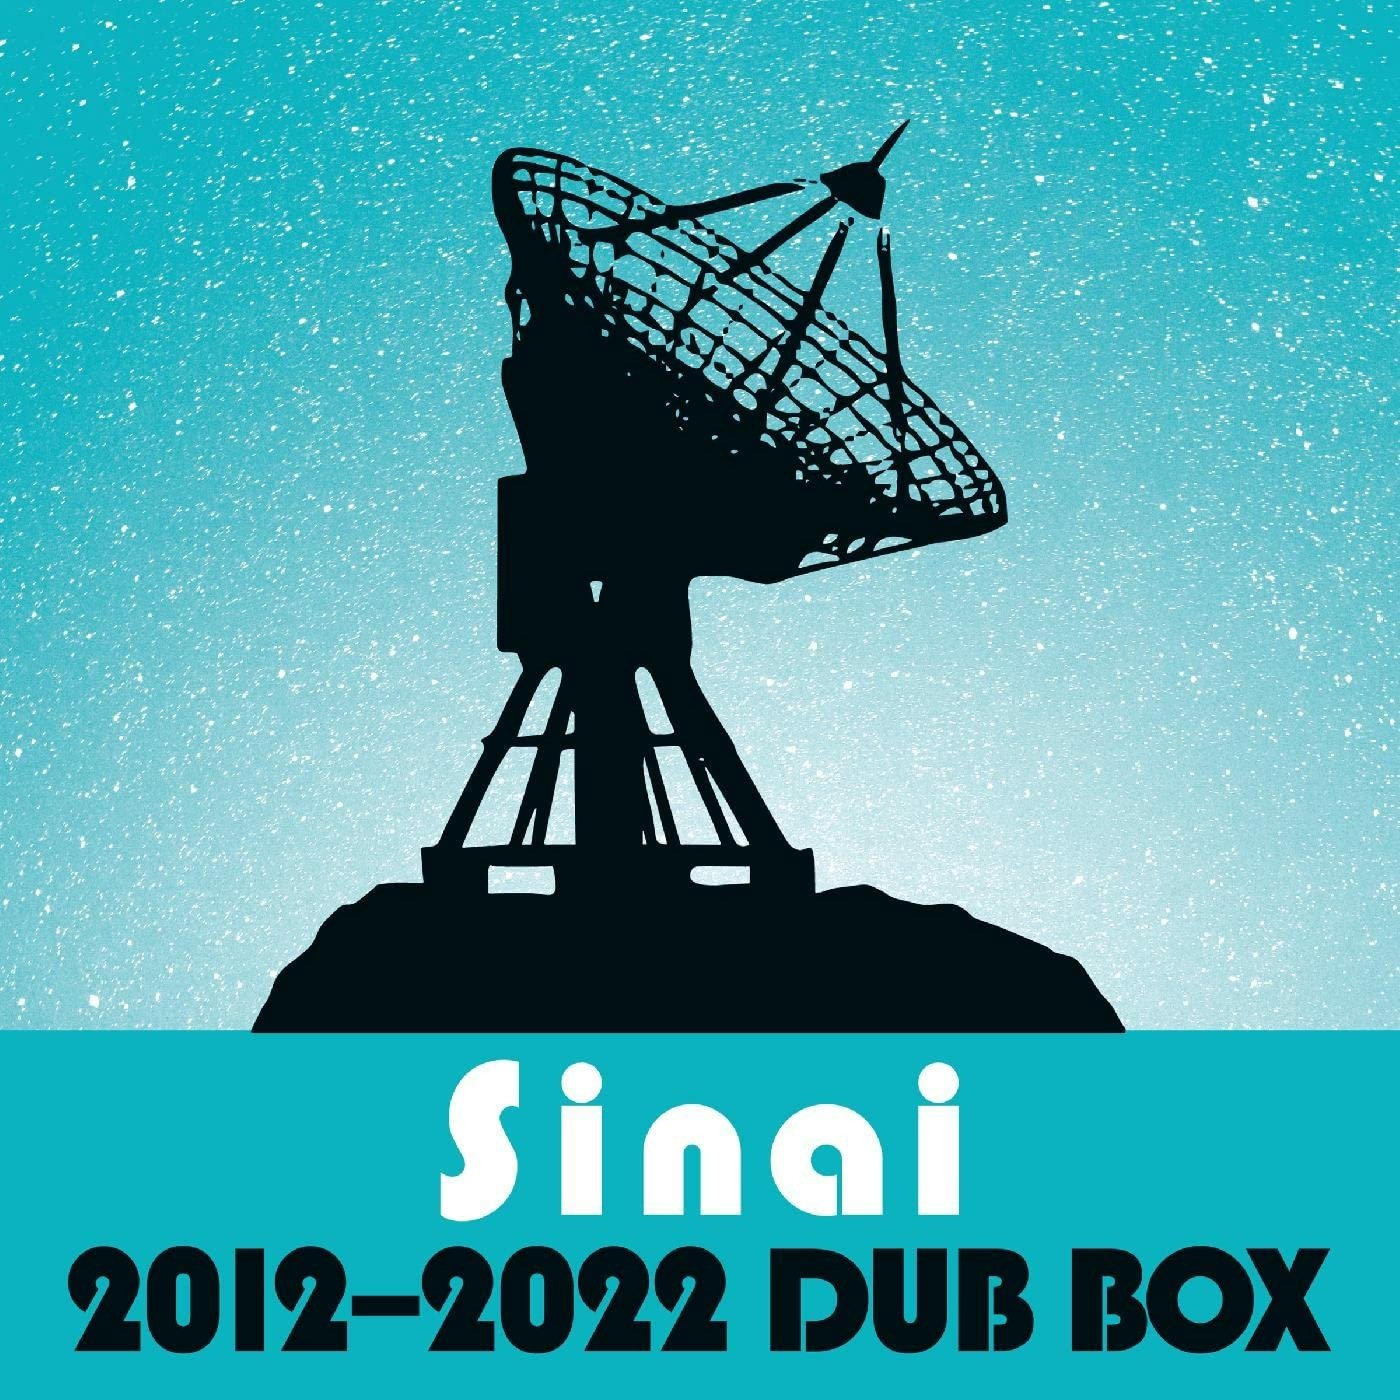 CD Shop - CISNEROS, AL SINAI DUB BOX